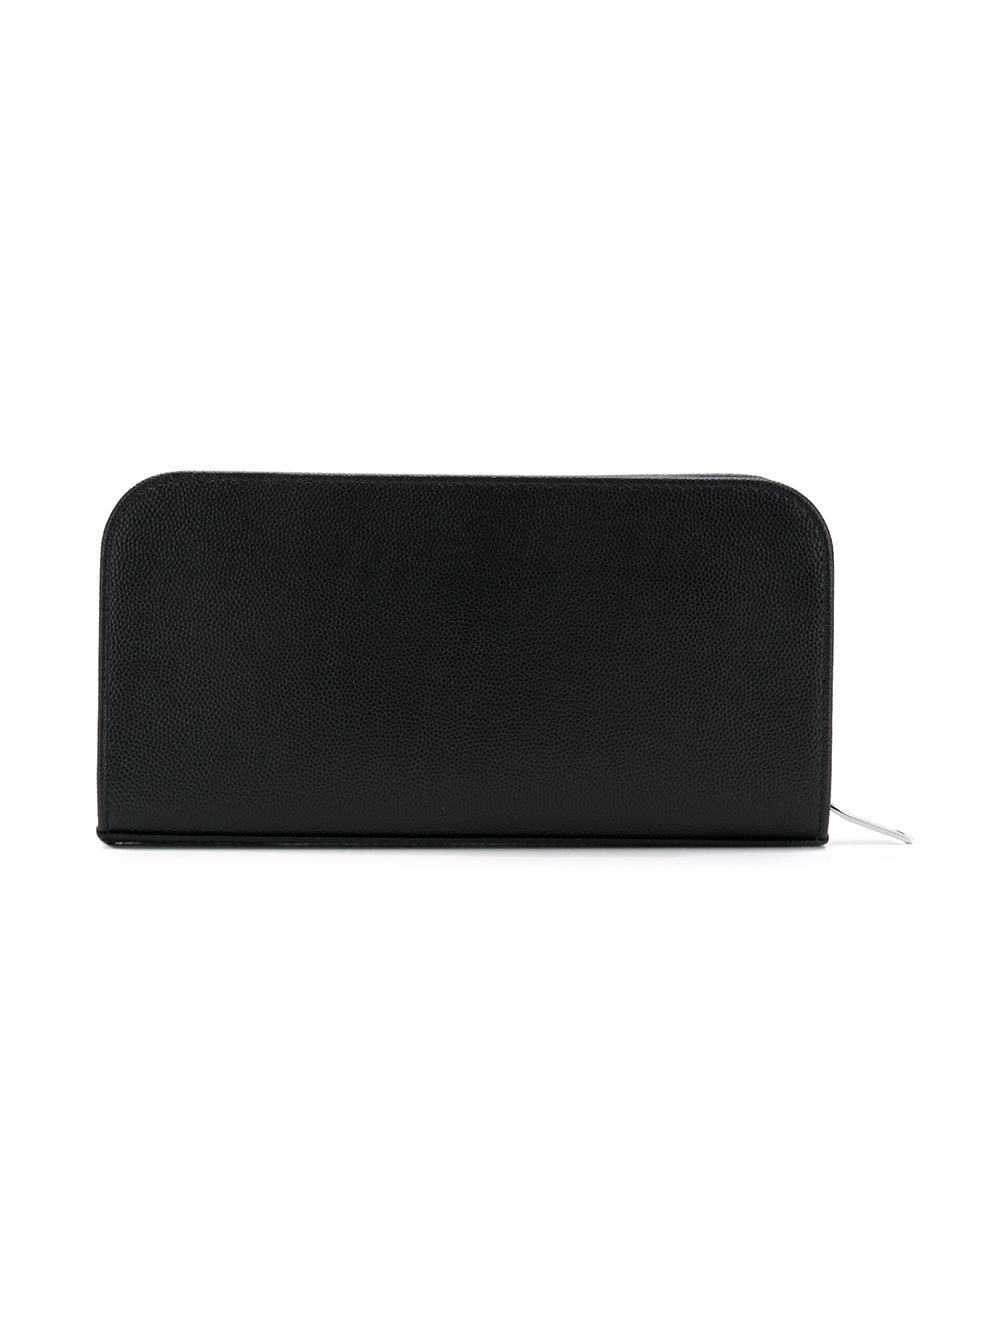 Saint Laurent logo zipped wallet - Black